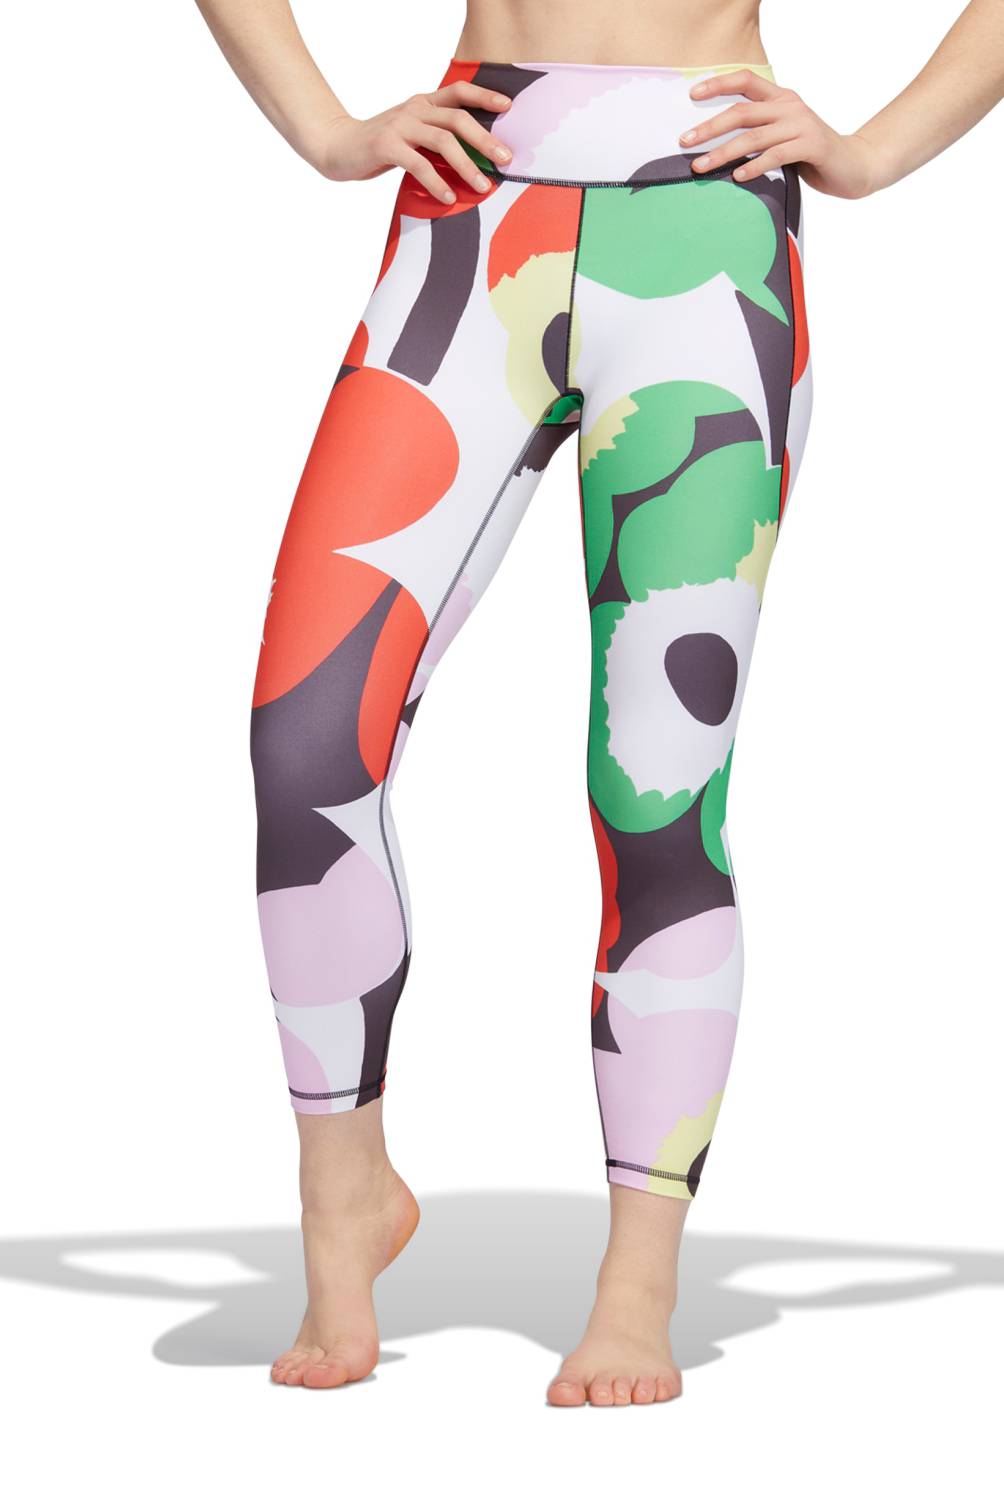 ADIDAS - Adidas Calzas 7/8 Tiro Alto Yoga Mujer